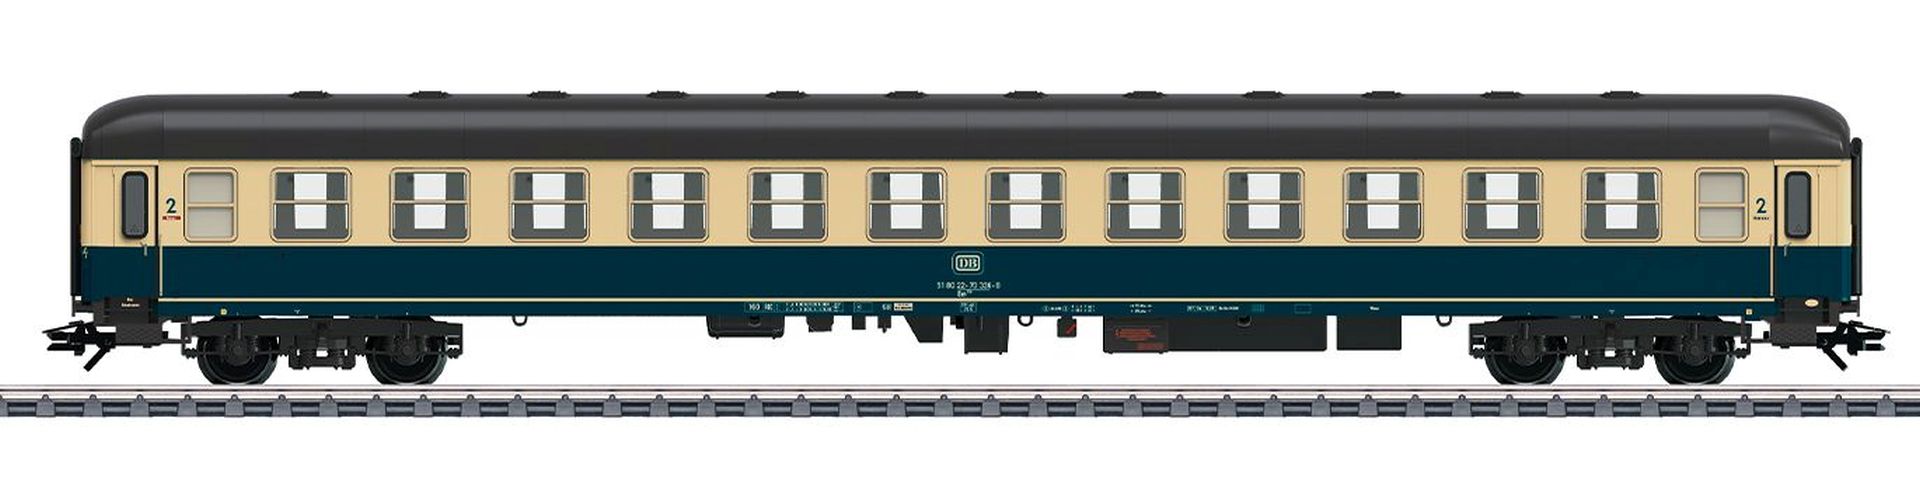 Märklin 43925 - Personenwagen Bm 234, 2. Klasse, DB, Ep.IV